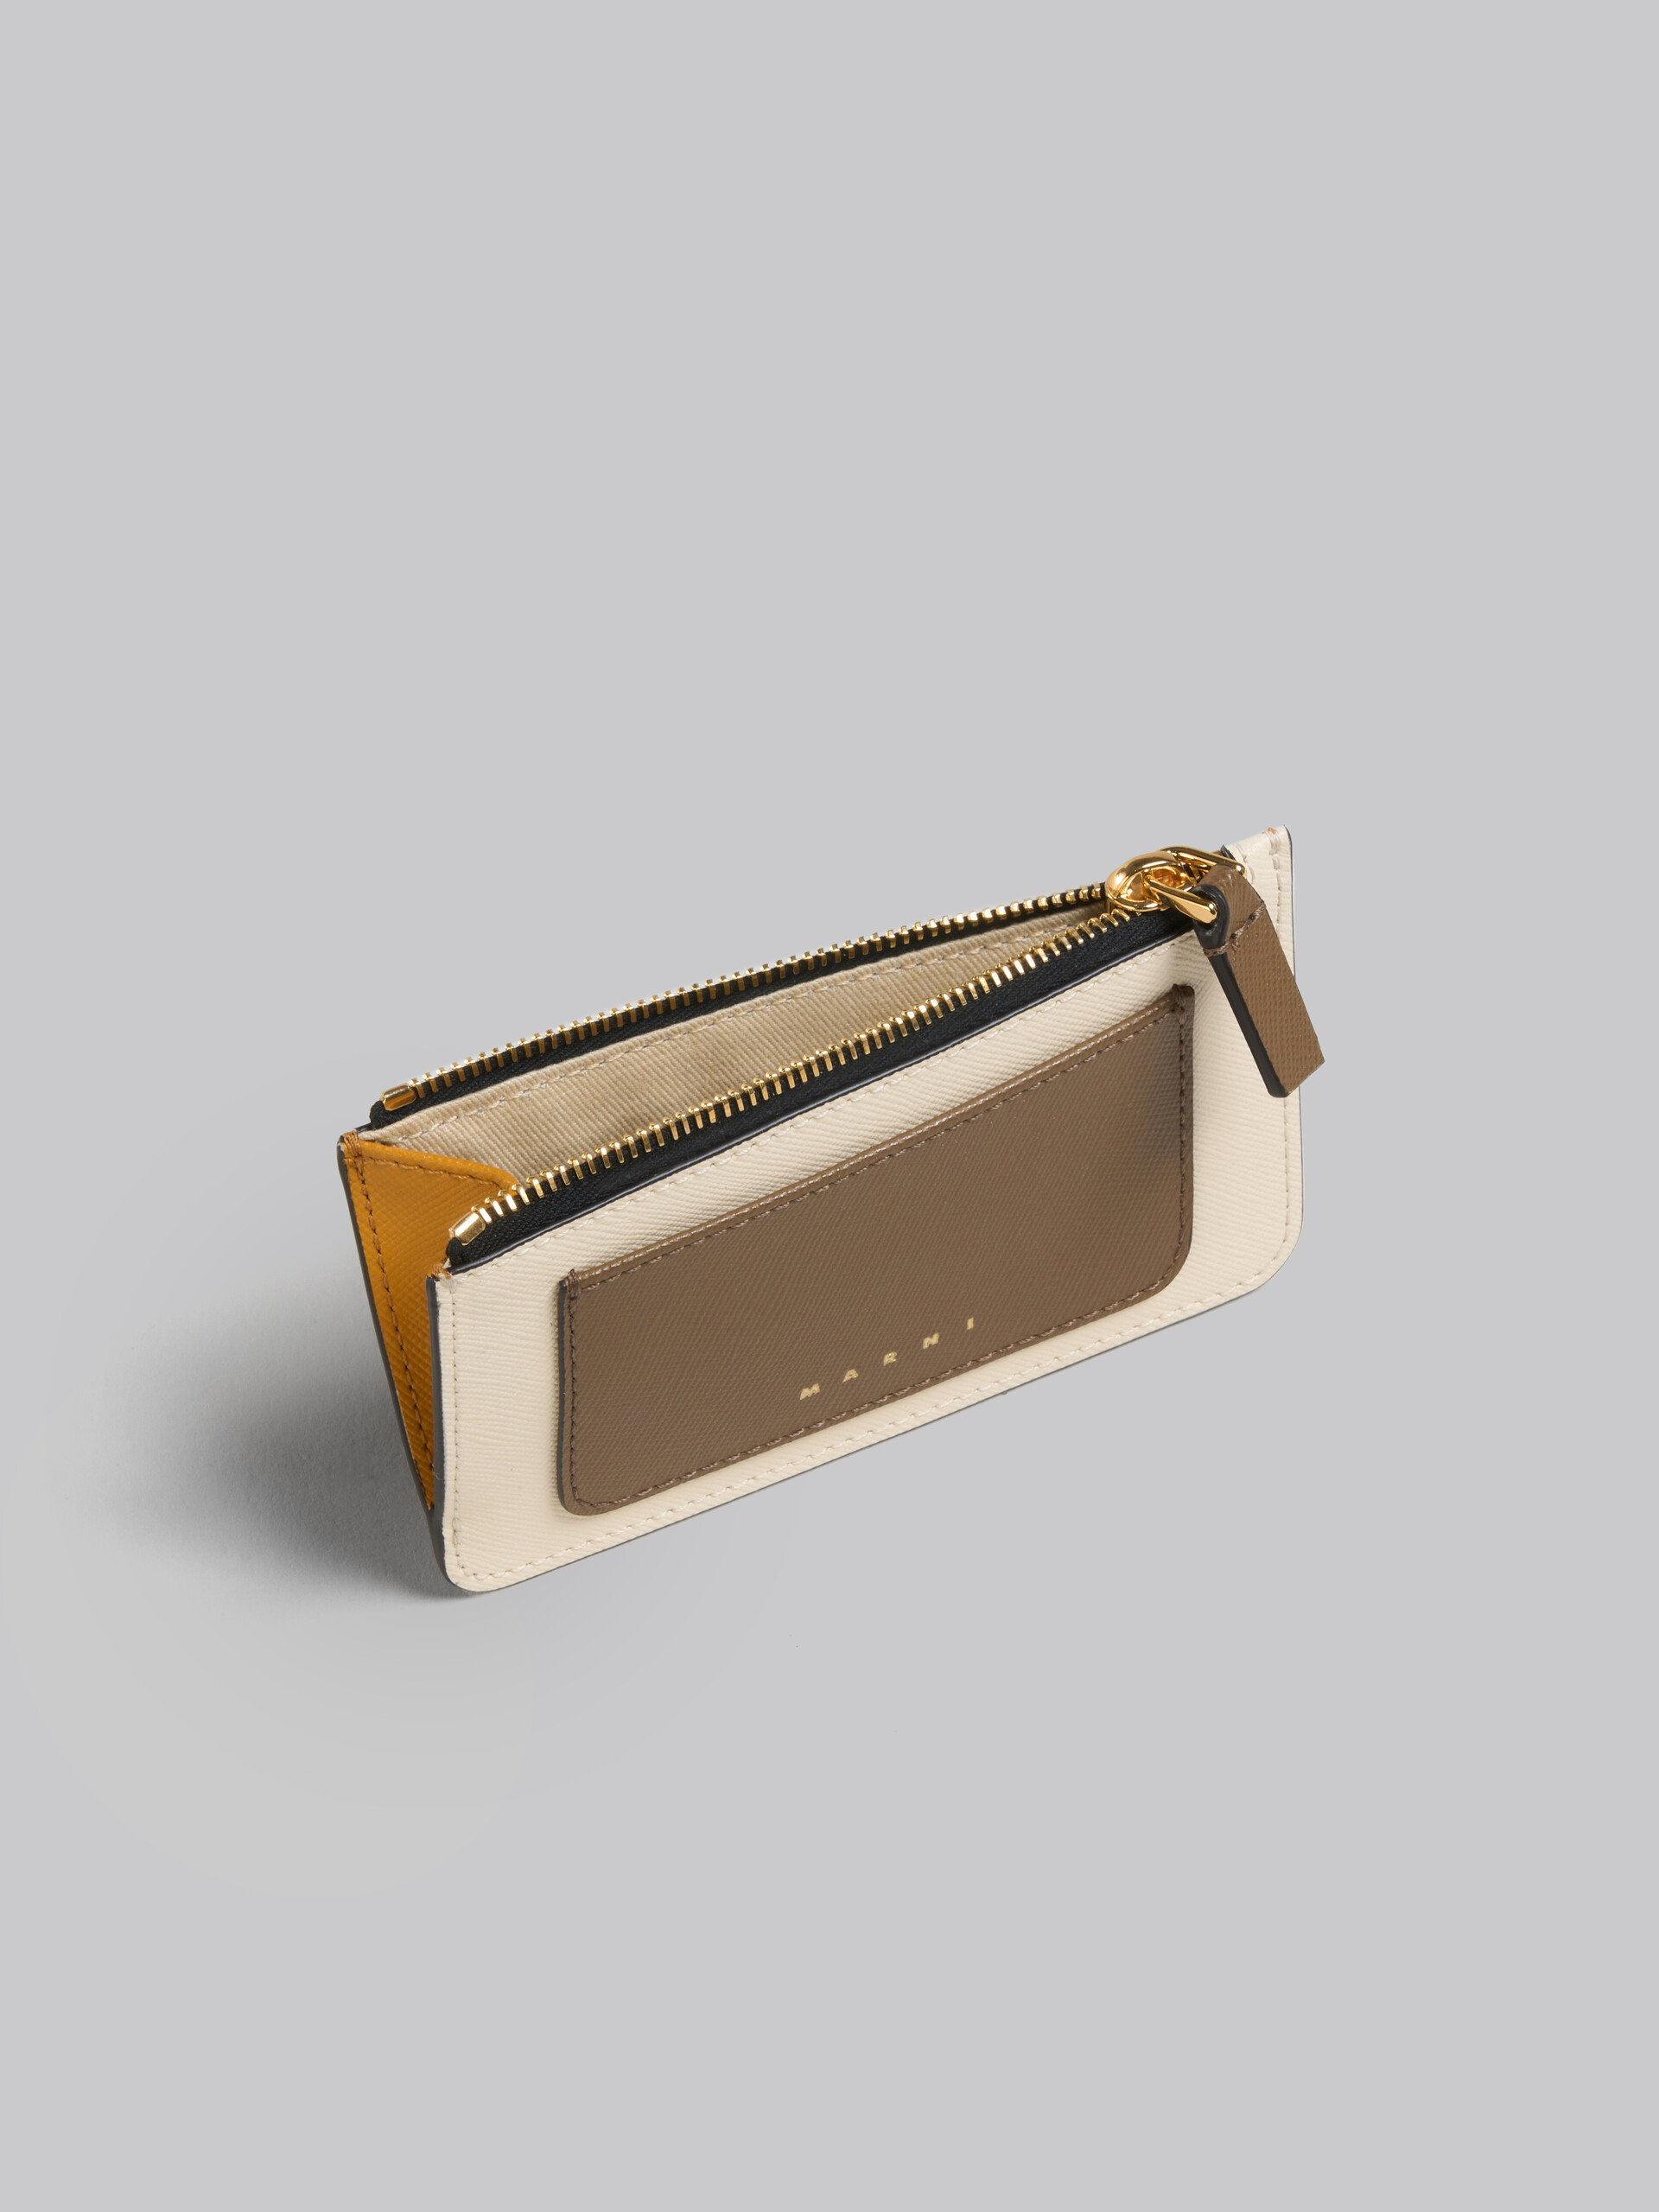 ライトグリーン、ホワイト、ブラウン サフィアーノレザー製カードケース - 財布 - Image 2